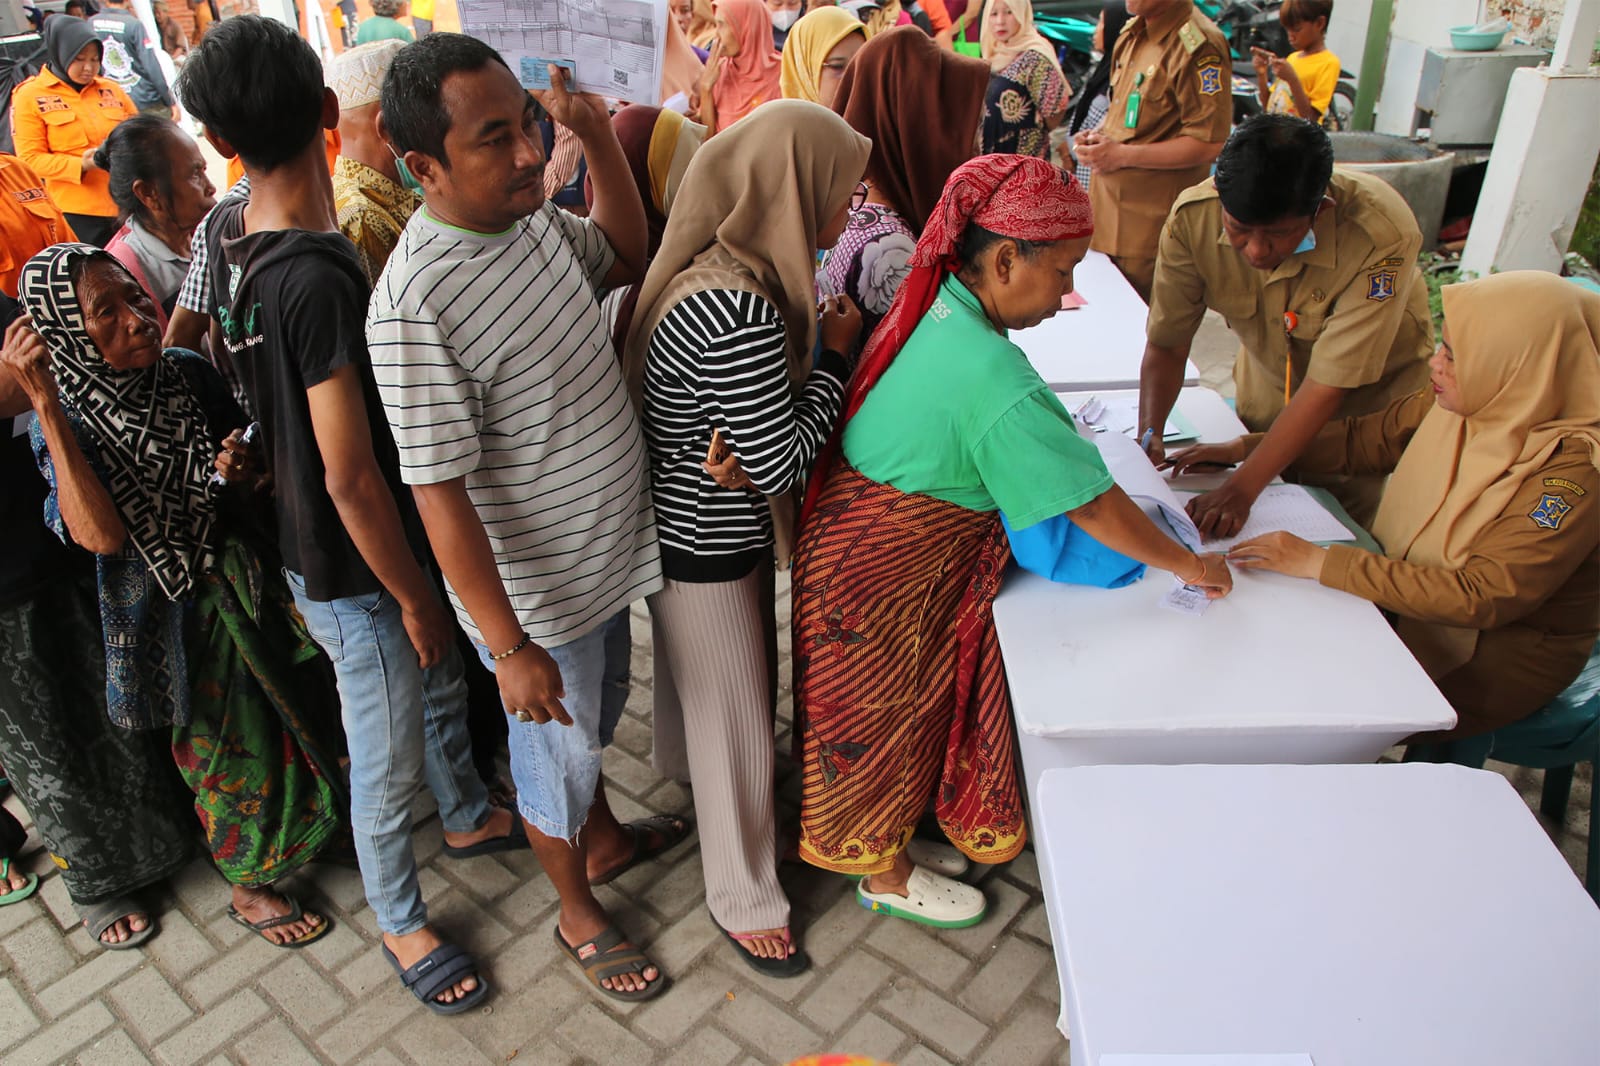 Pemkot Surabaya Bagikan 6 Ribu Paket Sembako Serentak di 31 Kecamatan